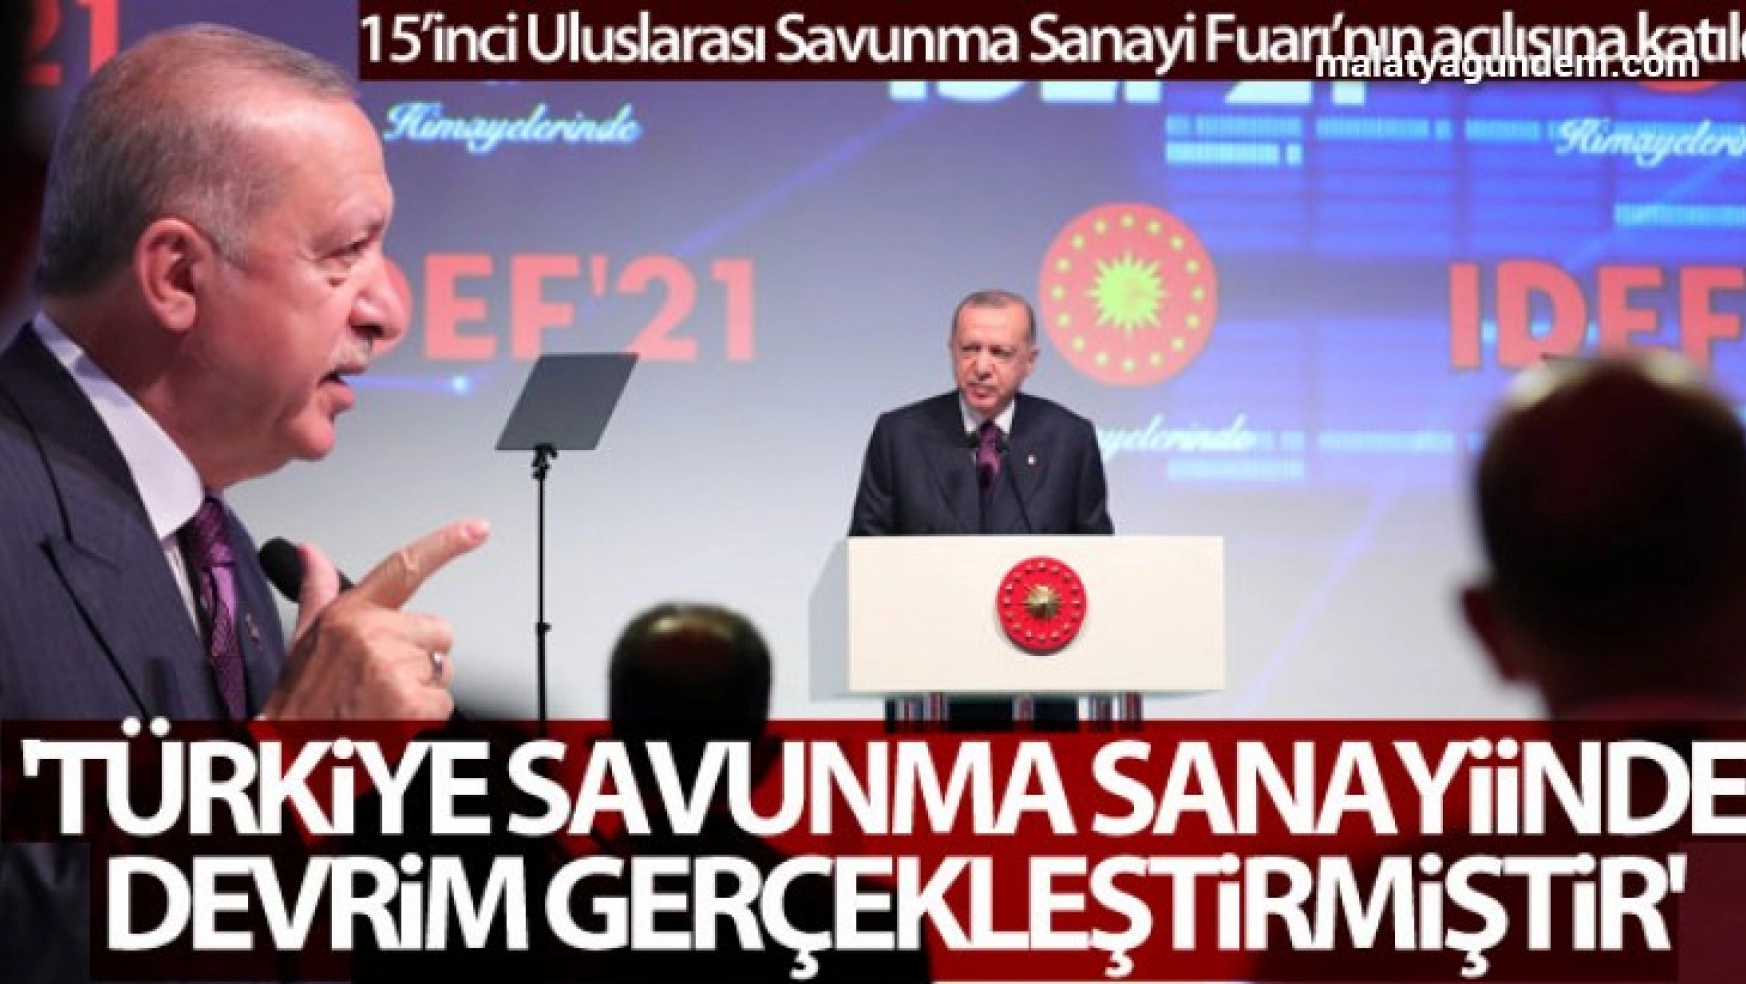 Erdoğan: 'Türkiye savunma sanayiinde devrim gerçekleştirmiştir'